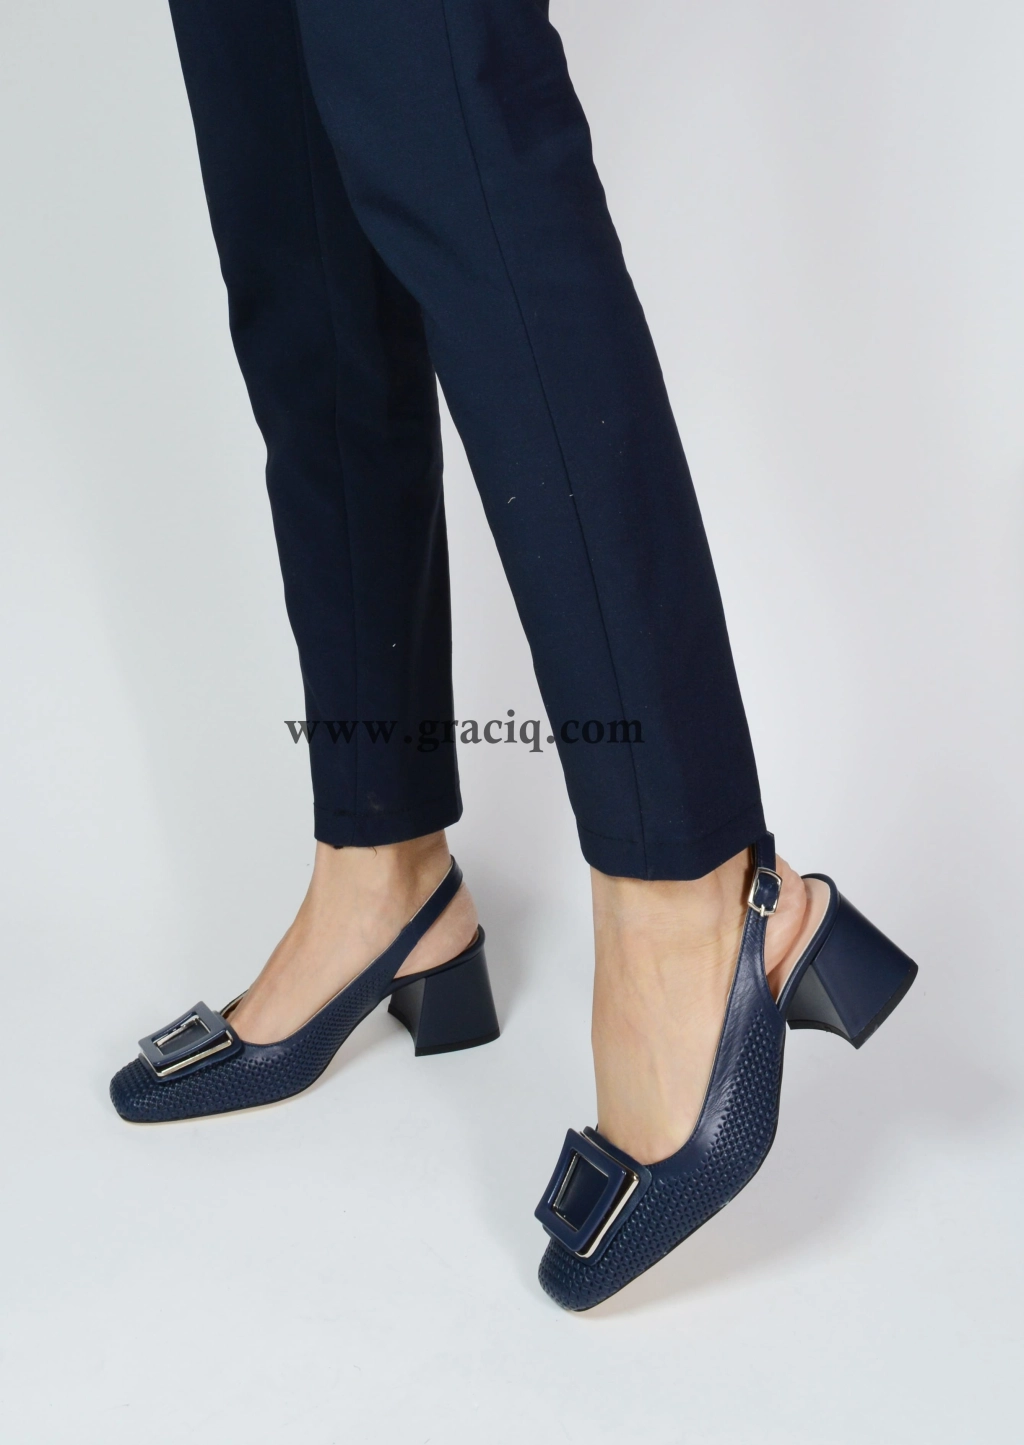 Дамски елегантни сандали с декоративна плочка в синя кожа